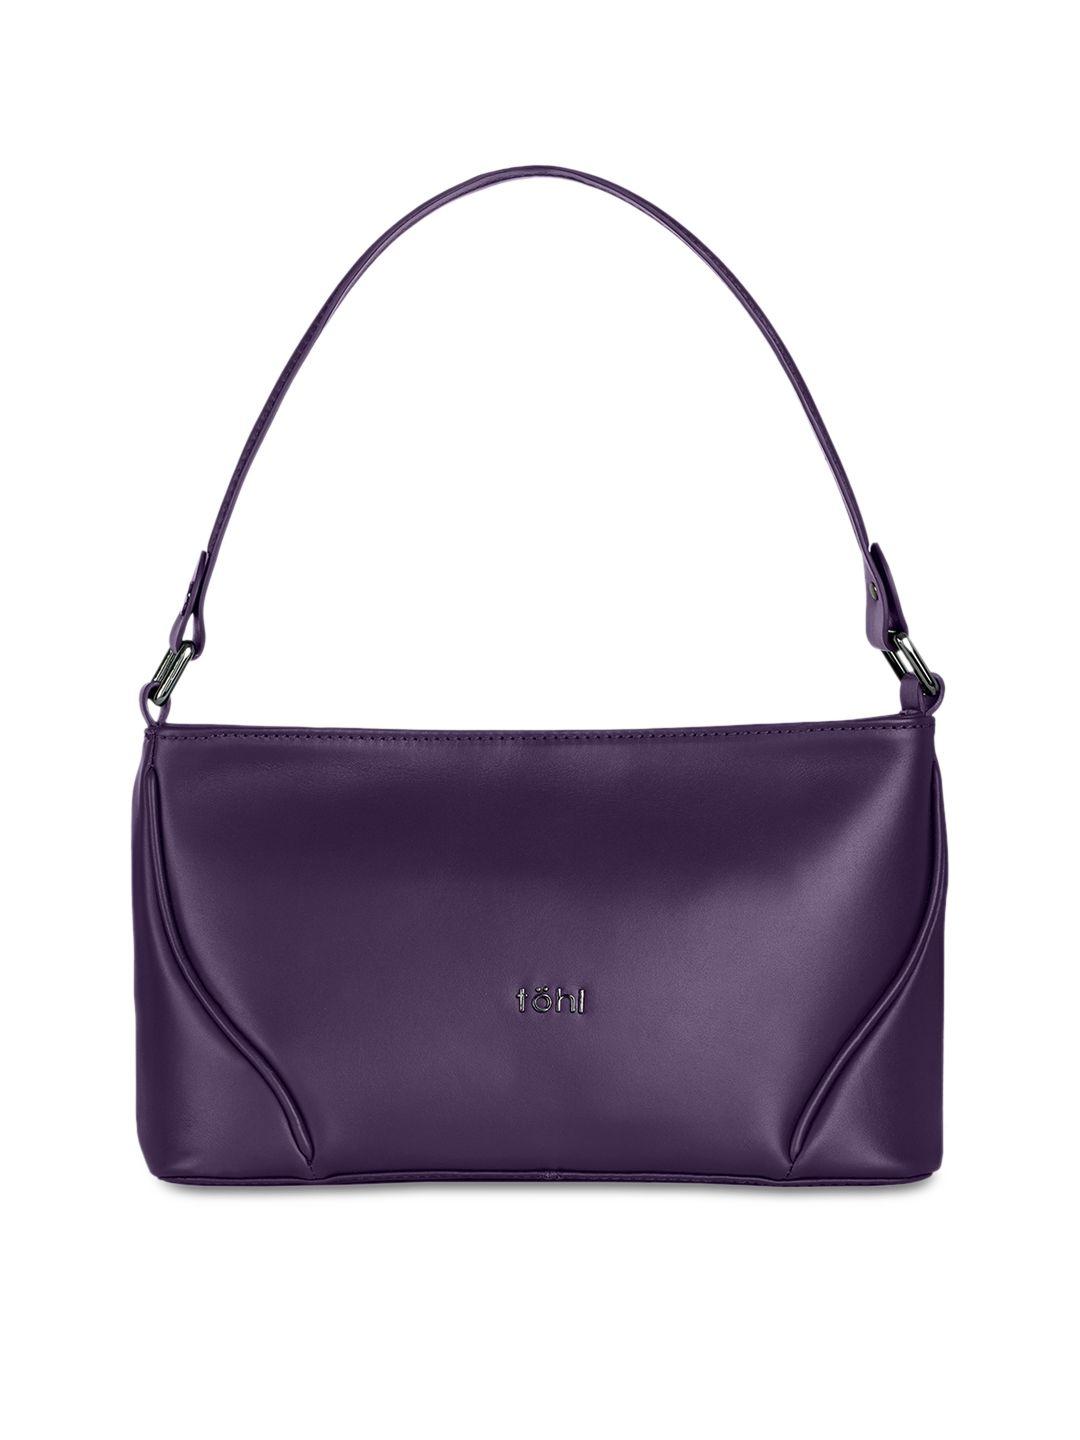 tohl purple solid shoulder bag